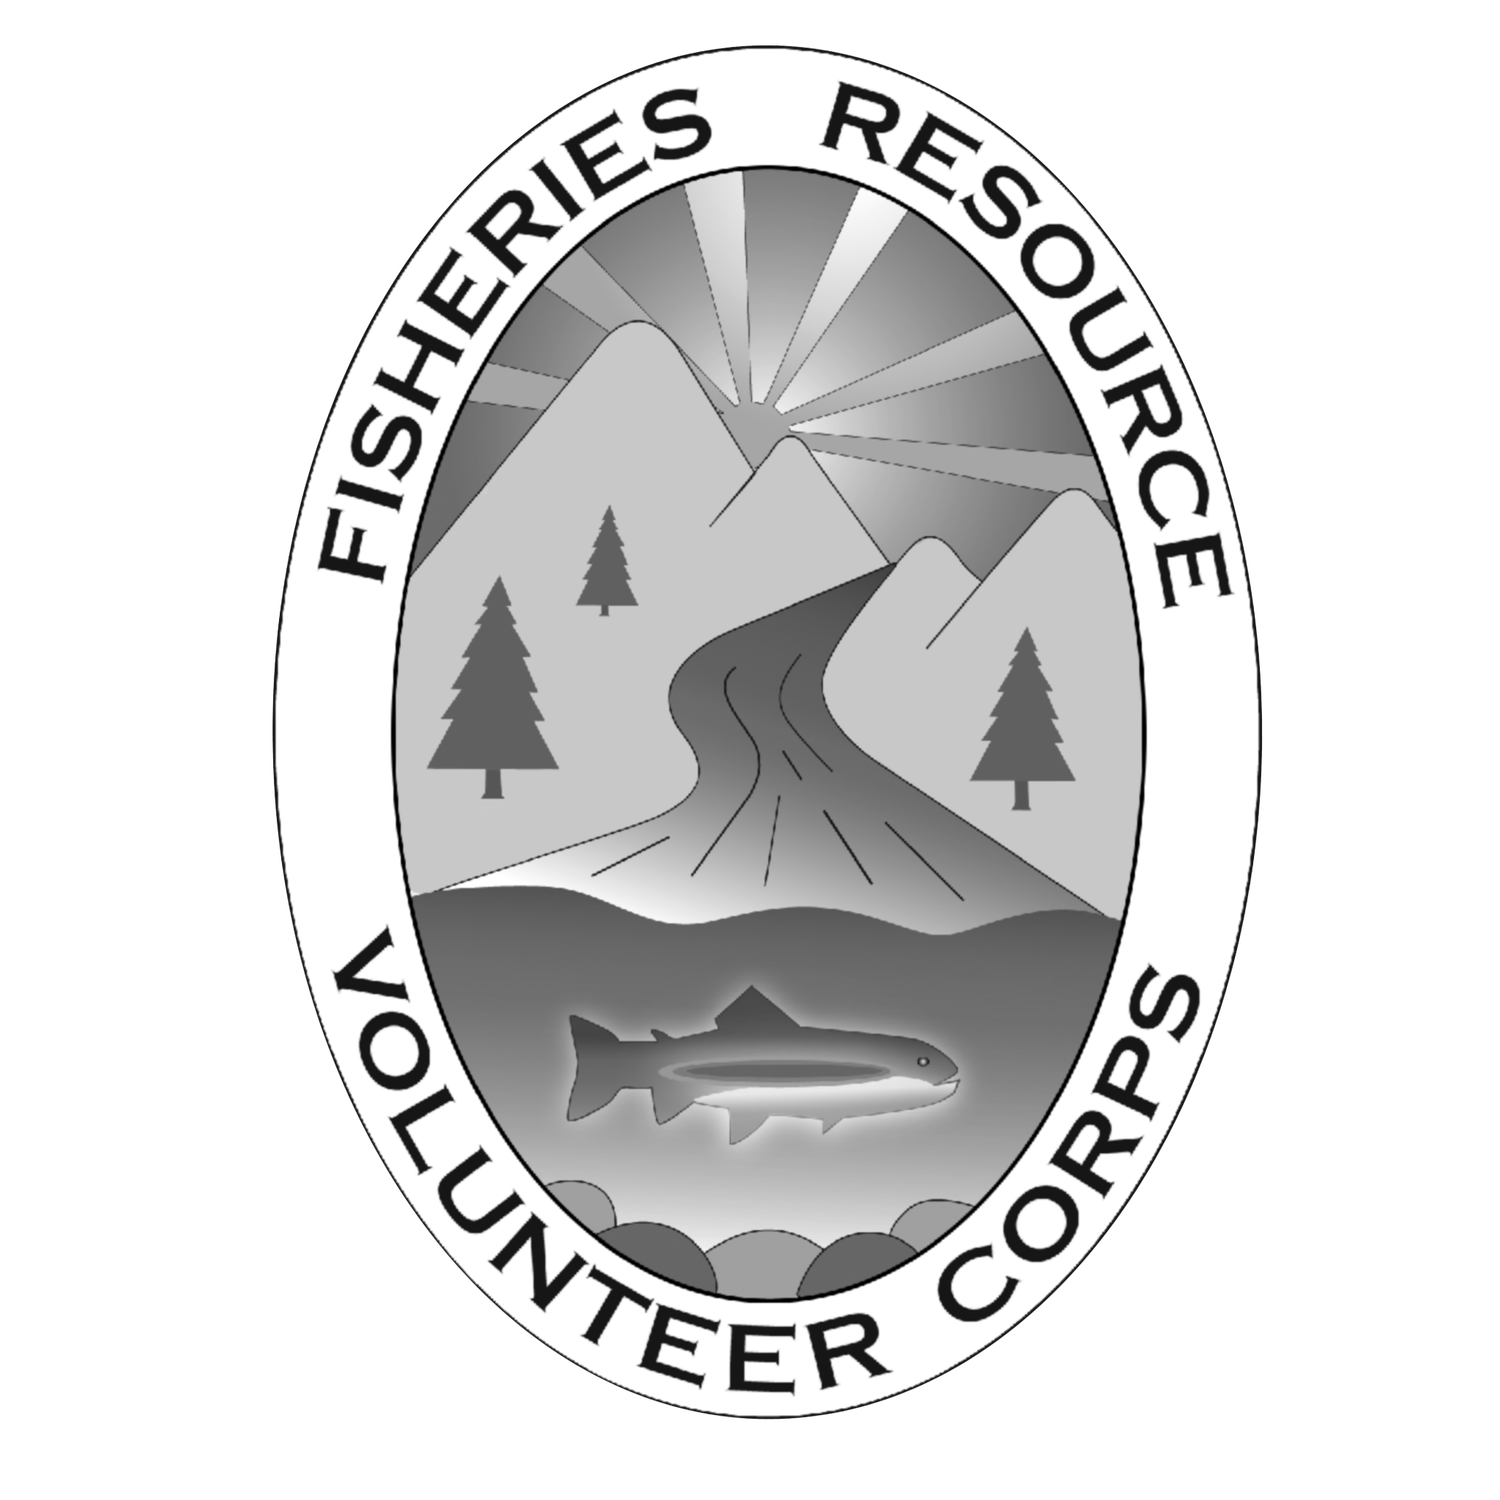 Fisheries Resource Volunteer Corps 